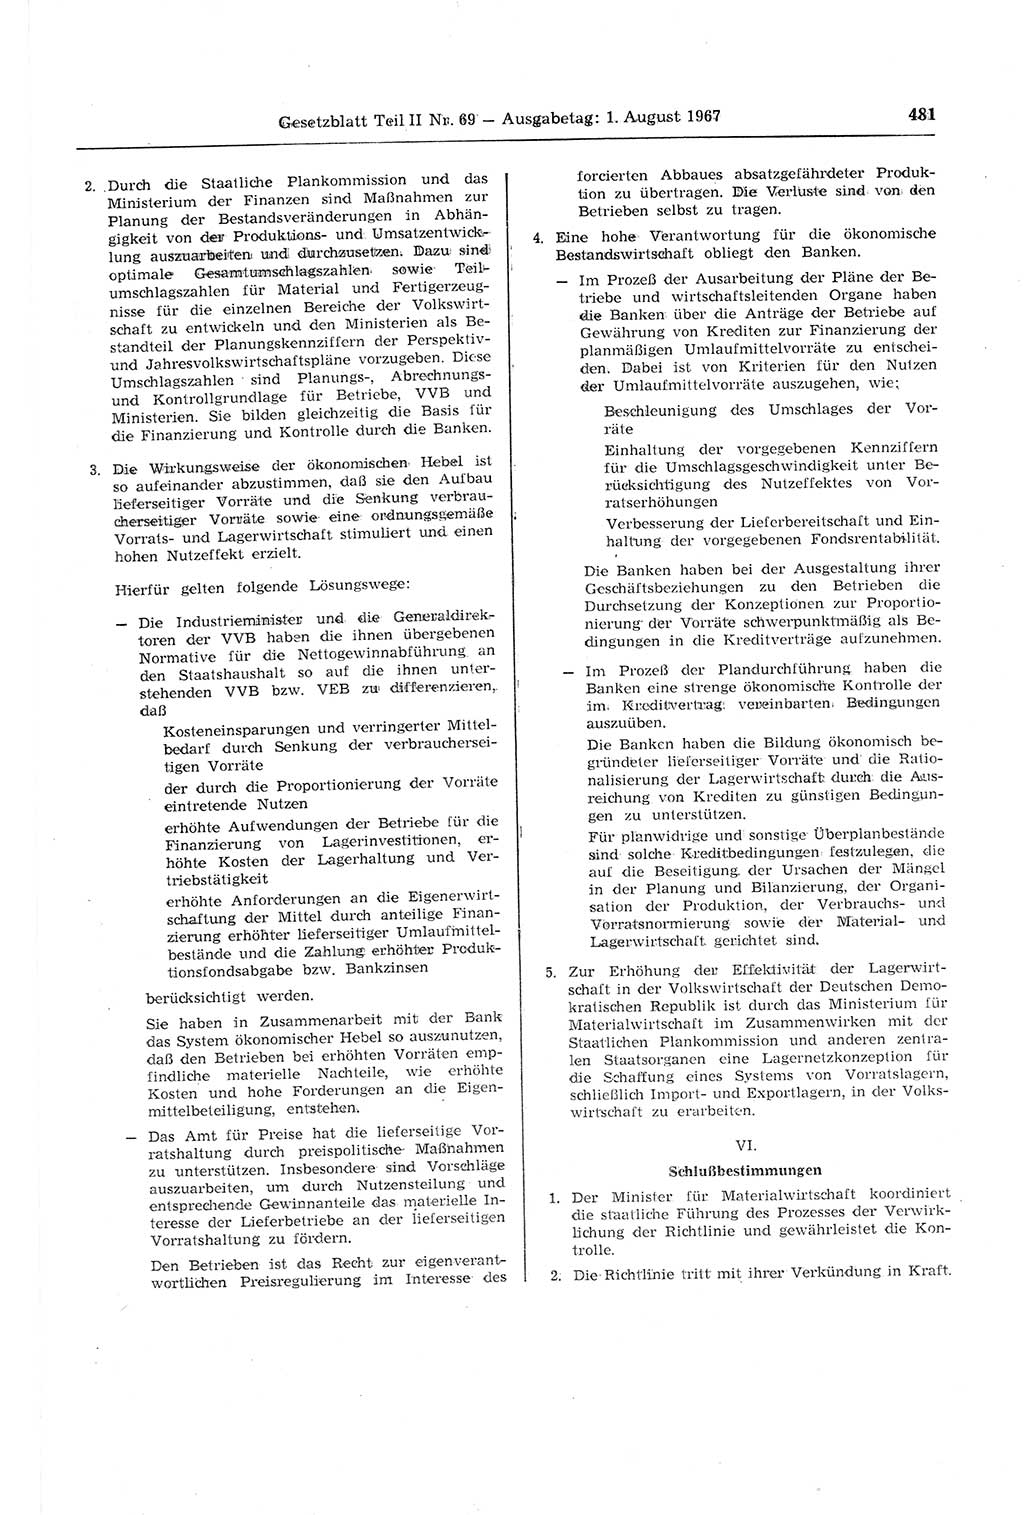 Gesetzblatt (GBl.) der Deutschen Demokratischen Republik (DDR) Teil ⅠⅠ 1967, Seite 481 (GBl. DDR ⅠⅠ 1967, S. 481)